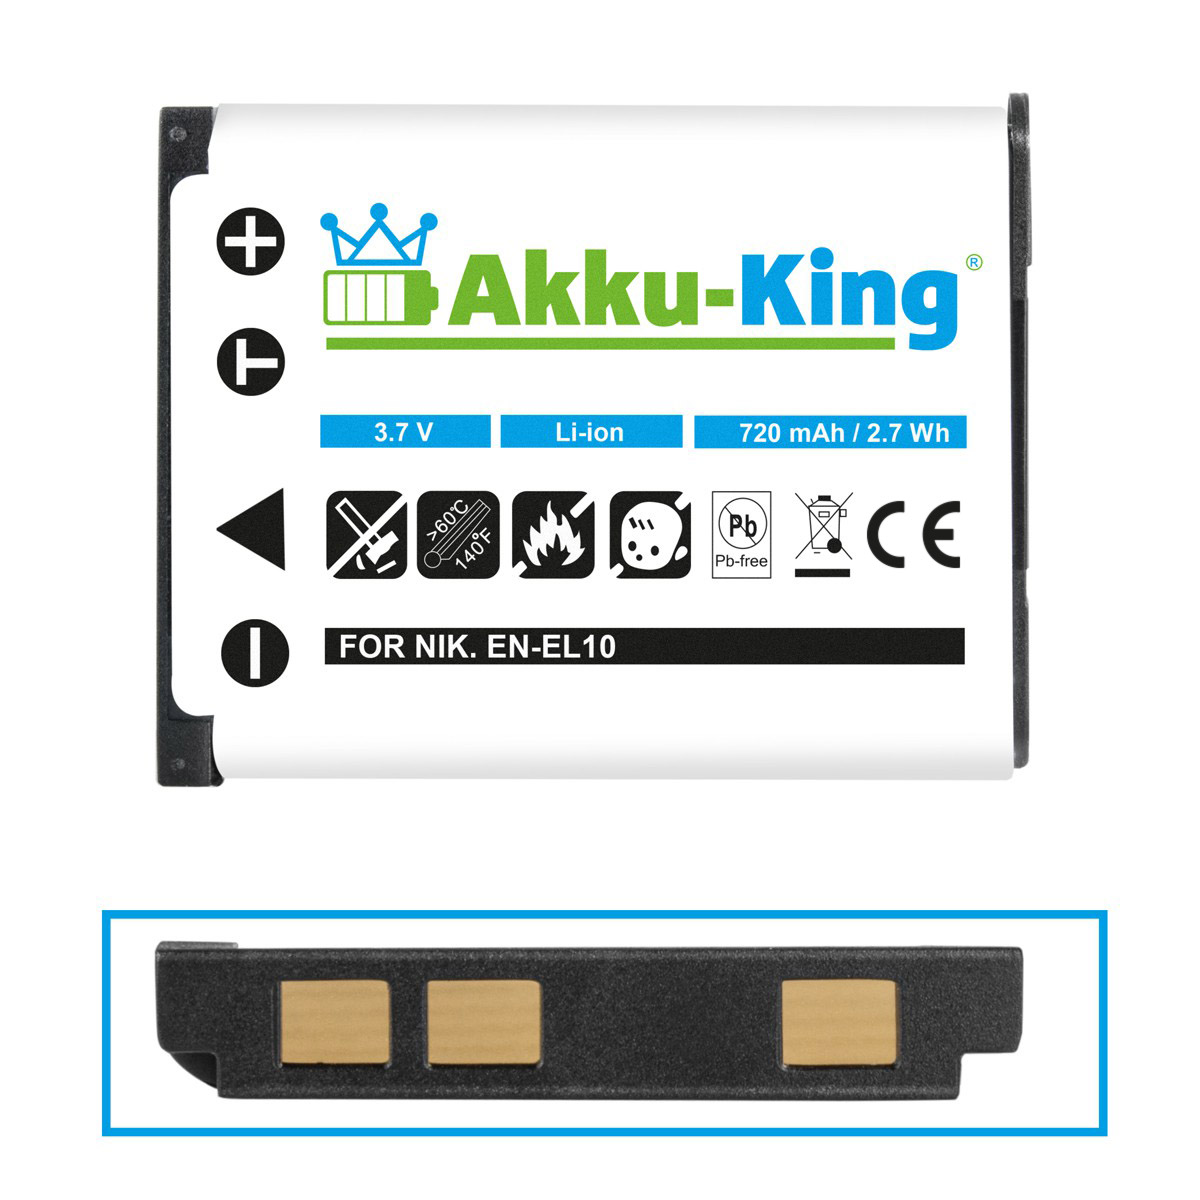 AKKU-KING Akku mit 3.7 D-Li63 Li-Ion Kamera-Akku, Pentax kompatibel Volt, 700mAh